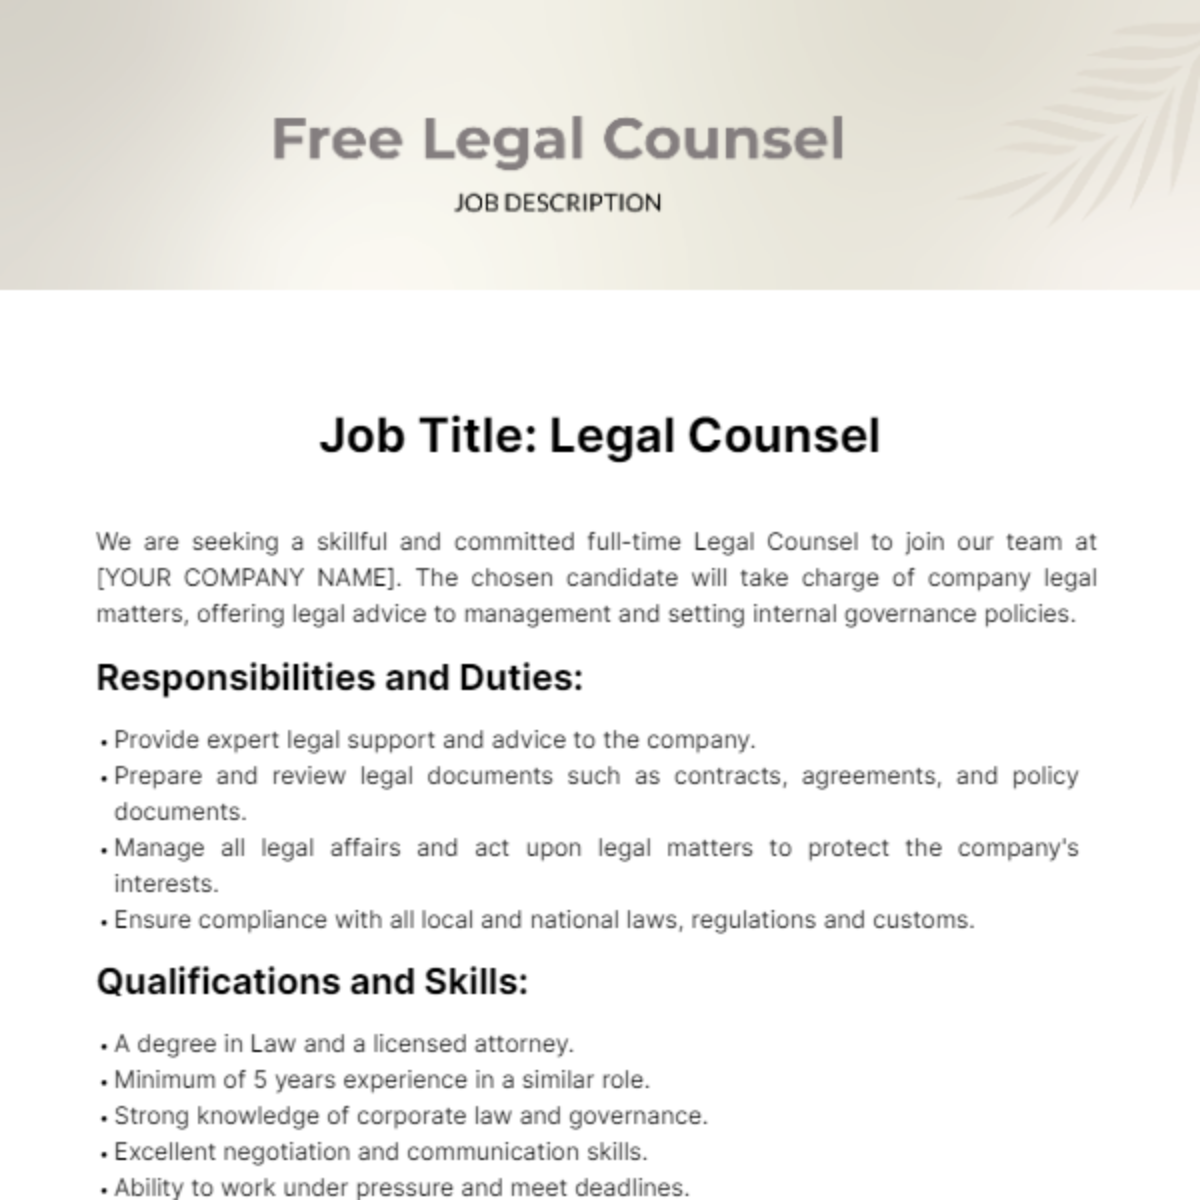 Legal Counsel Job Description Template